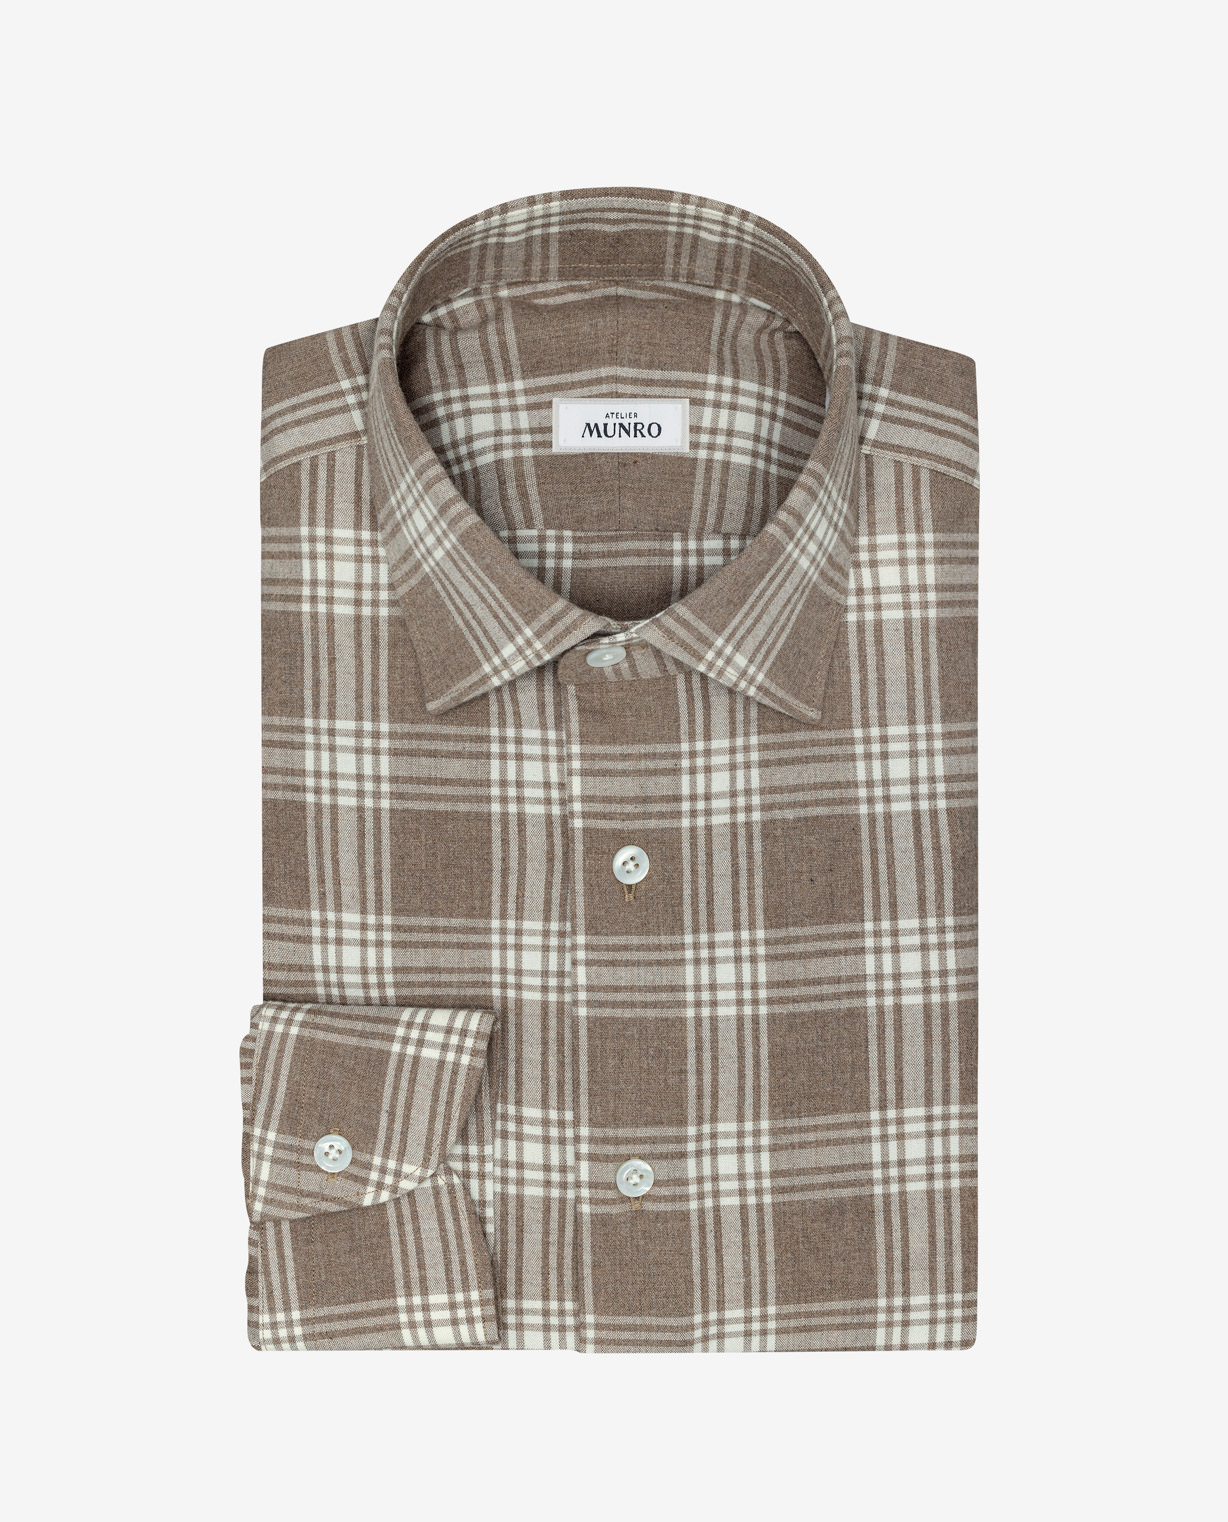 Light-Brown-Check-Cotton-Flannel-Shirt-MSHC0337-custom-shirts-b0c168811b99413c8b070c7608165d09